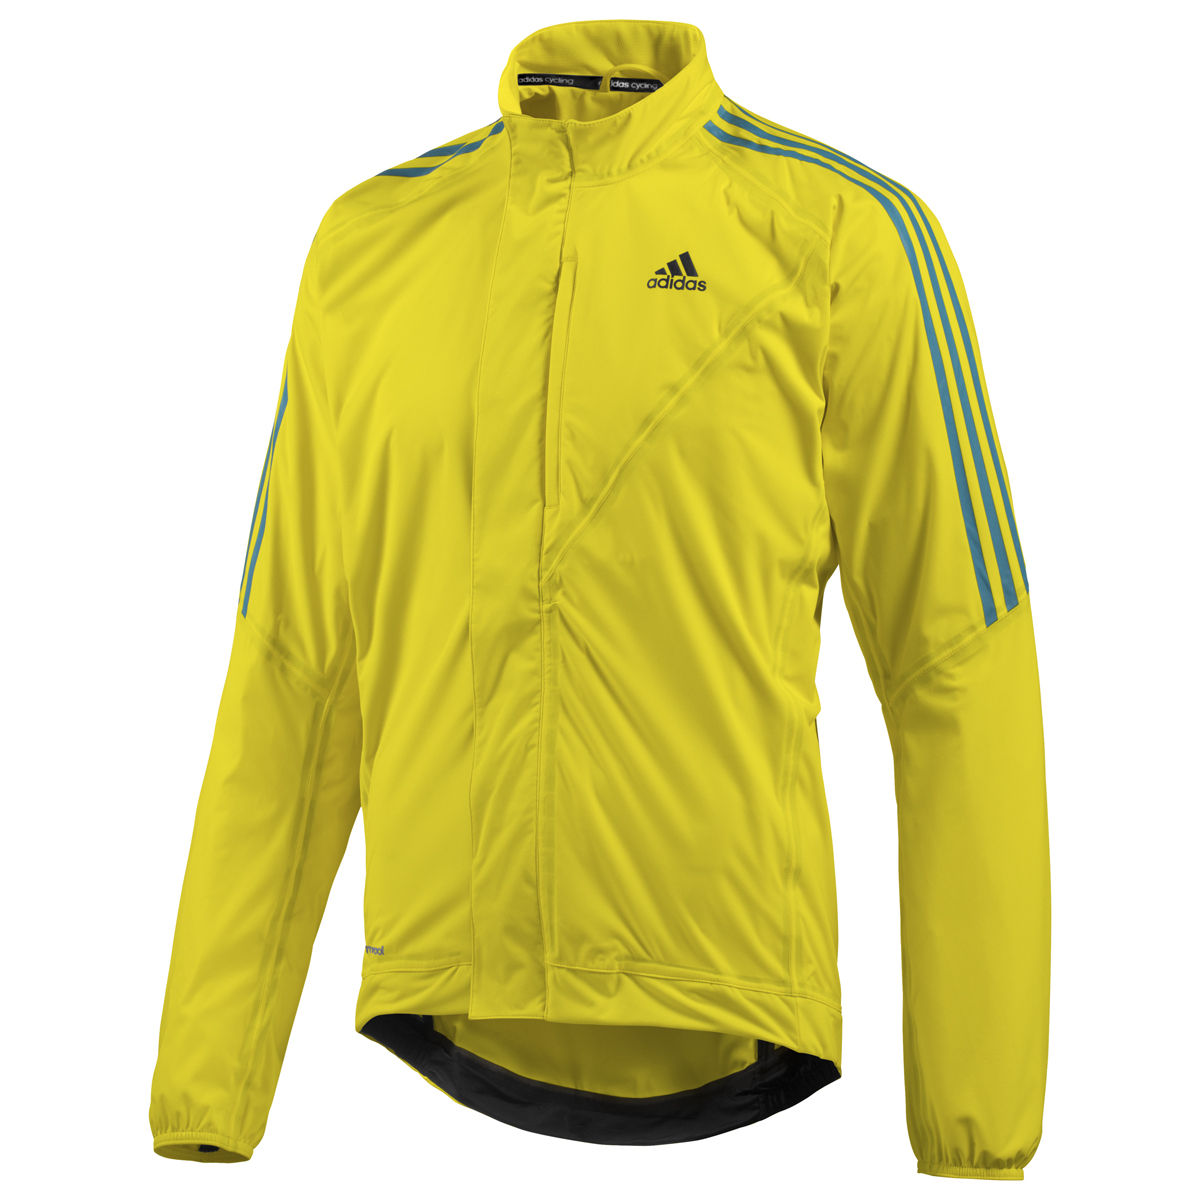 adidas response cycling jacket